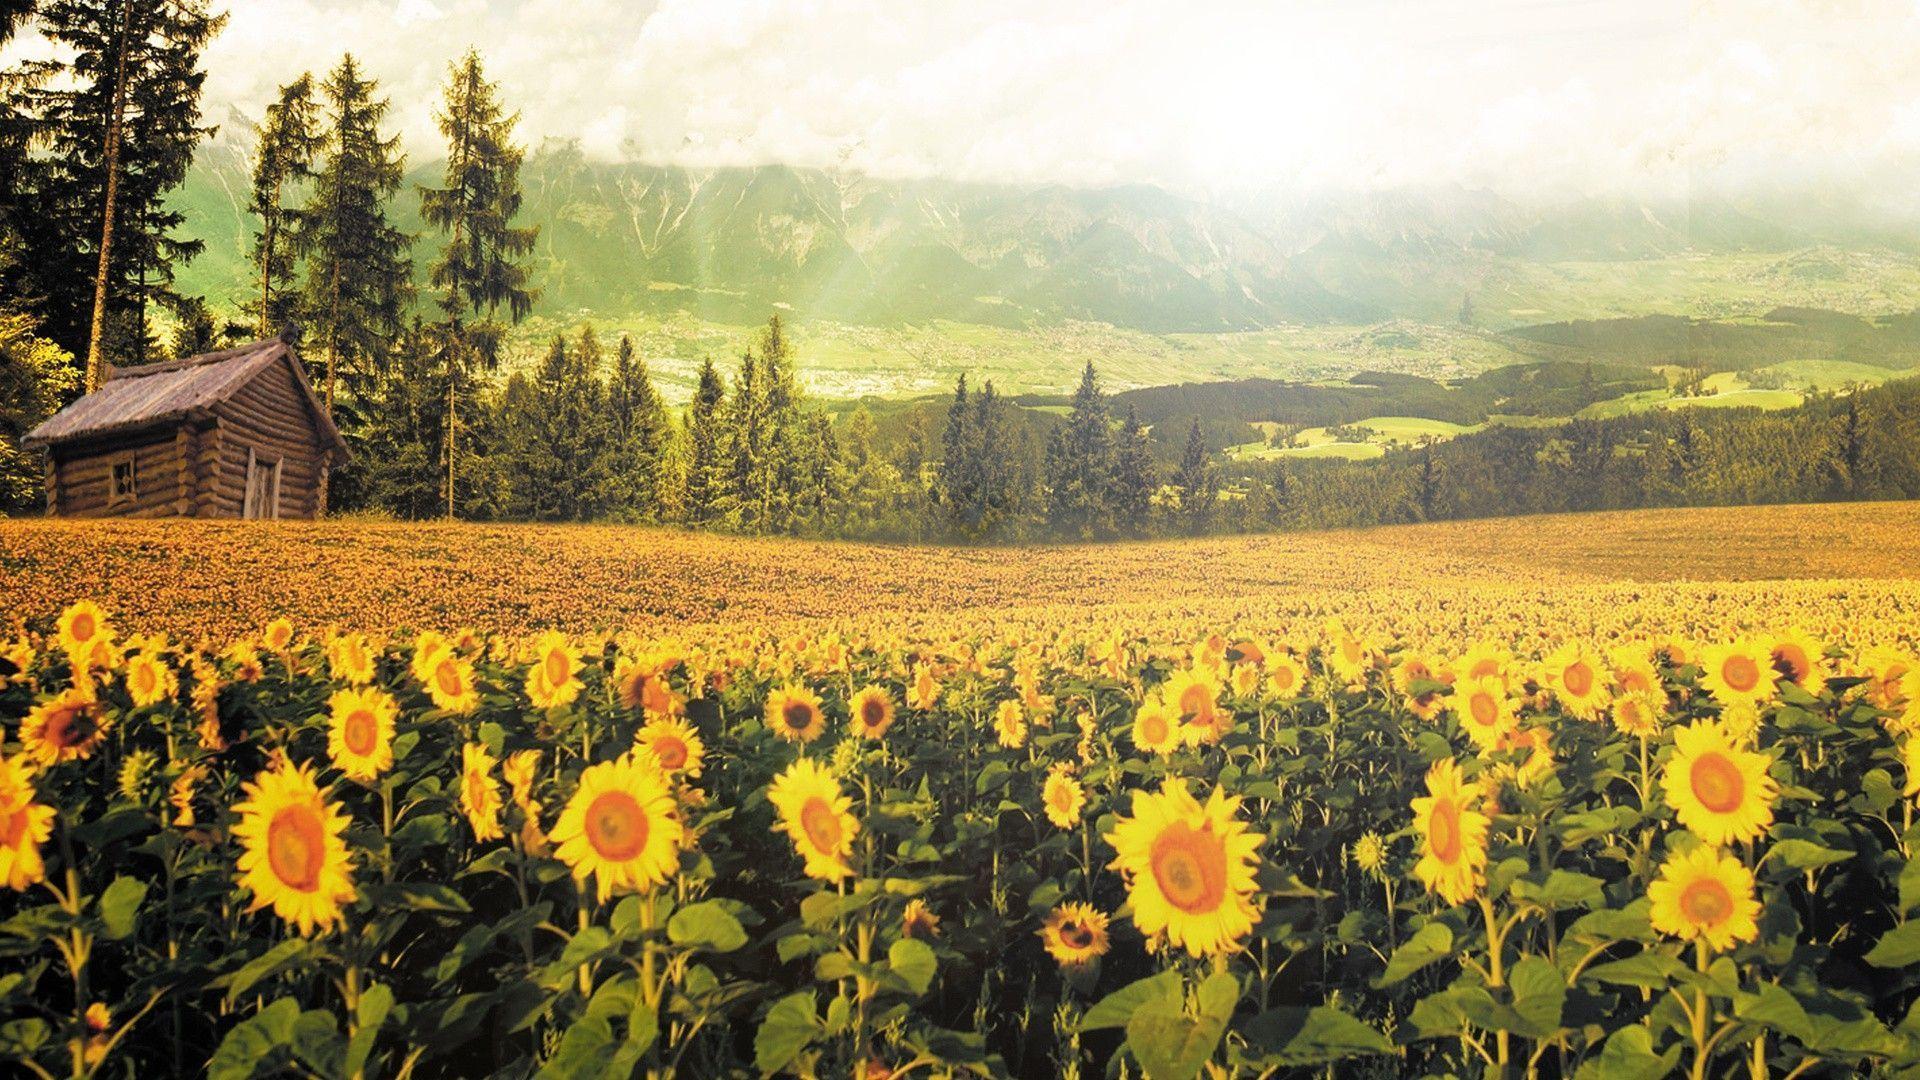 Hướng dương (sunflower): Hãy cùng mình khám phá thế giới của các loài Hướng Dương, được thể hiện trong các bức ảnh tuyệt đẹp và sắc nét. Điều này sẽ khiến bạn cảm thấy như mình đang đứng trên bãi cỏ, ngắm những cánh hoa sáng rực và cảm nhận được sự tươi mới của mùa hè.